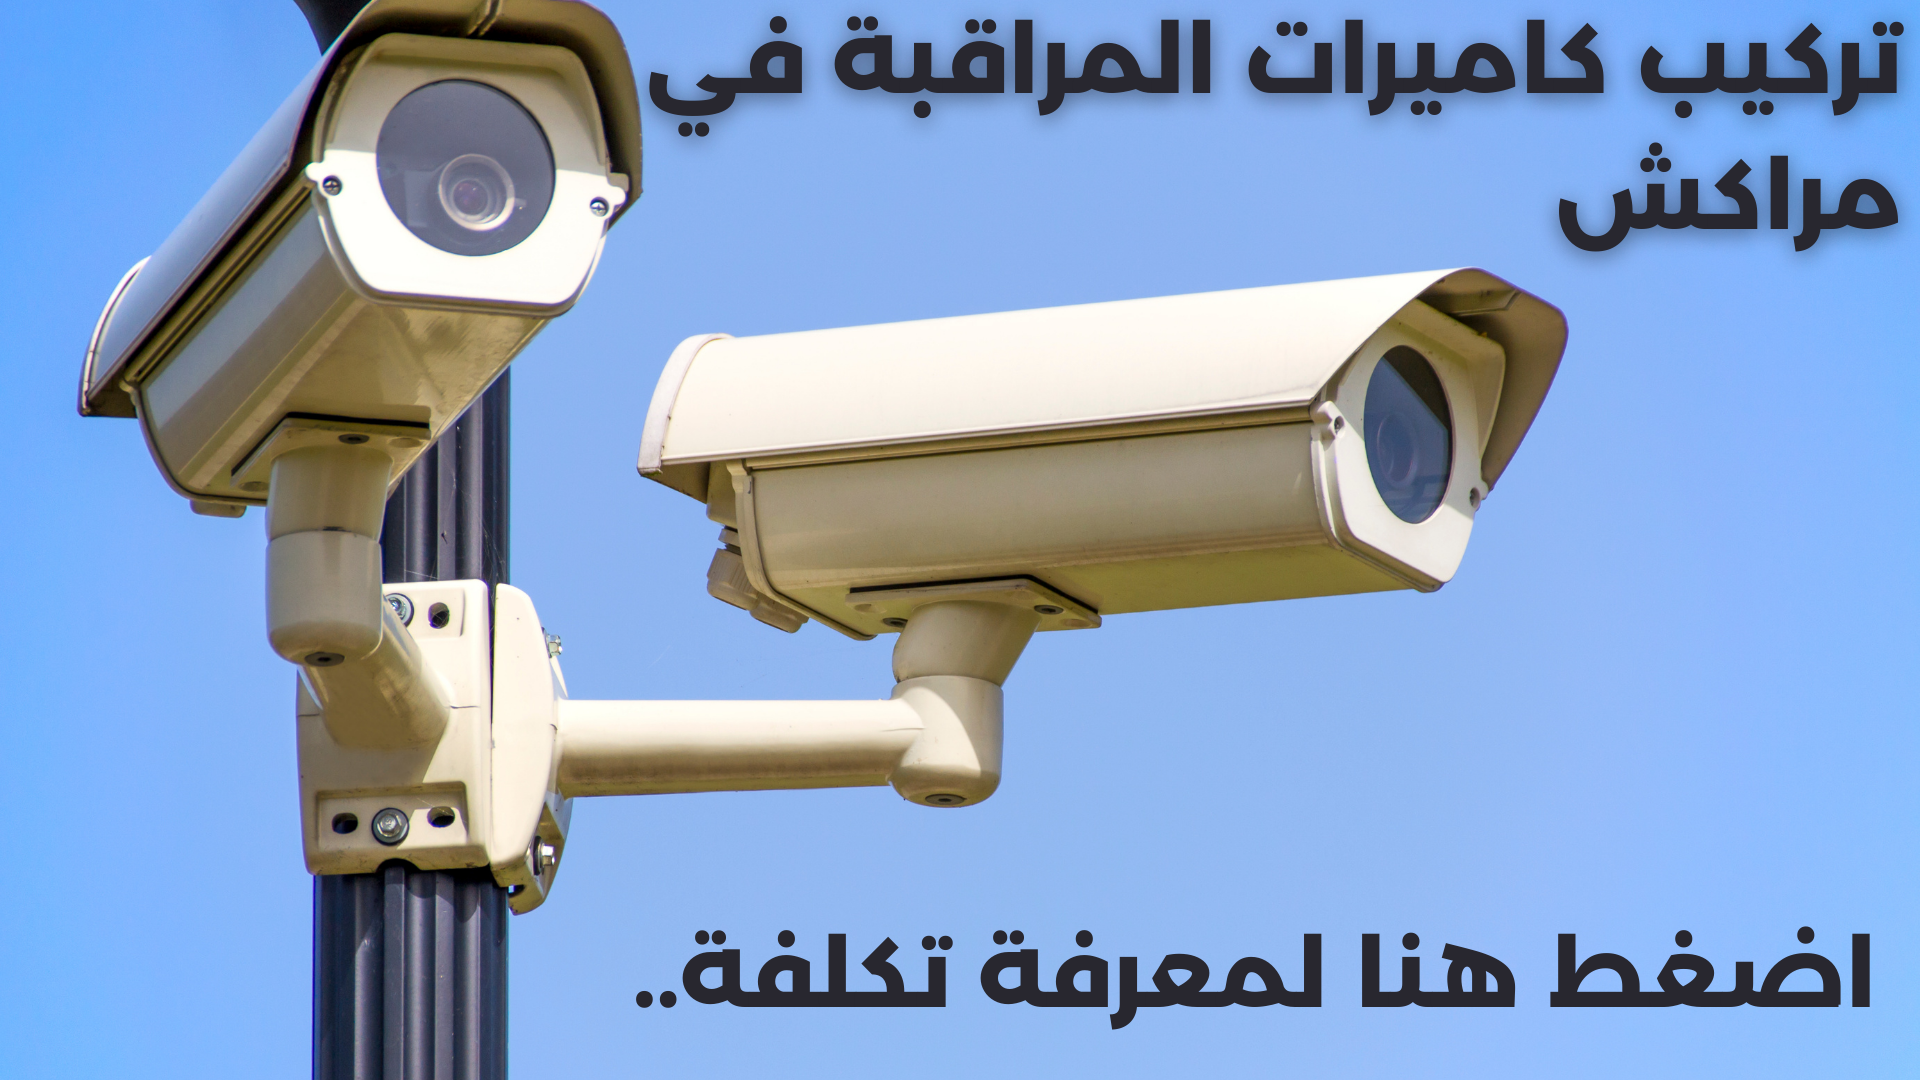 CONTACTEZ DIRECTEMENT SUR 
تركيب كاميرات المراقبة في مراكش
+212608060784